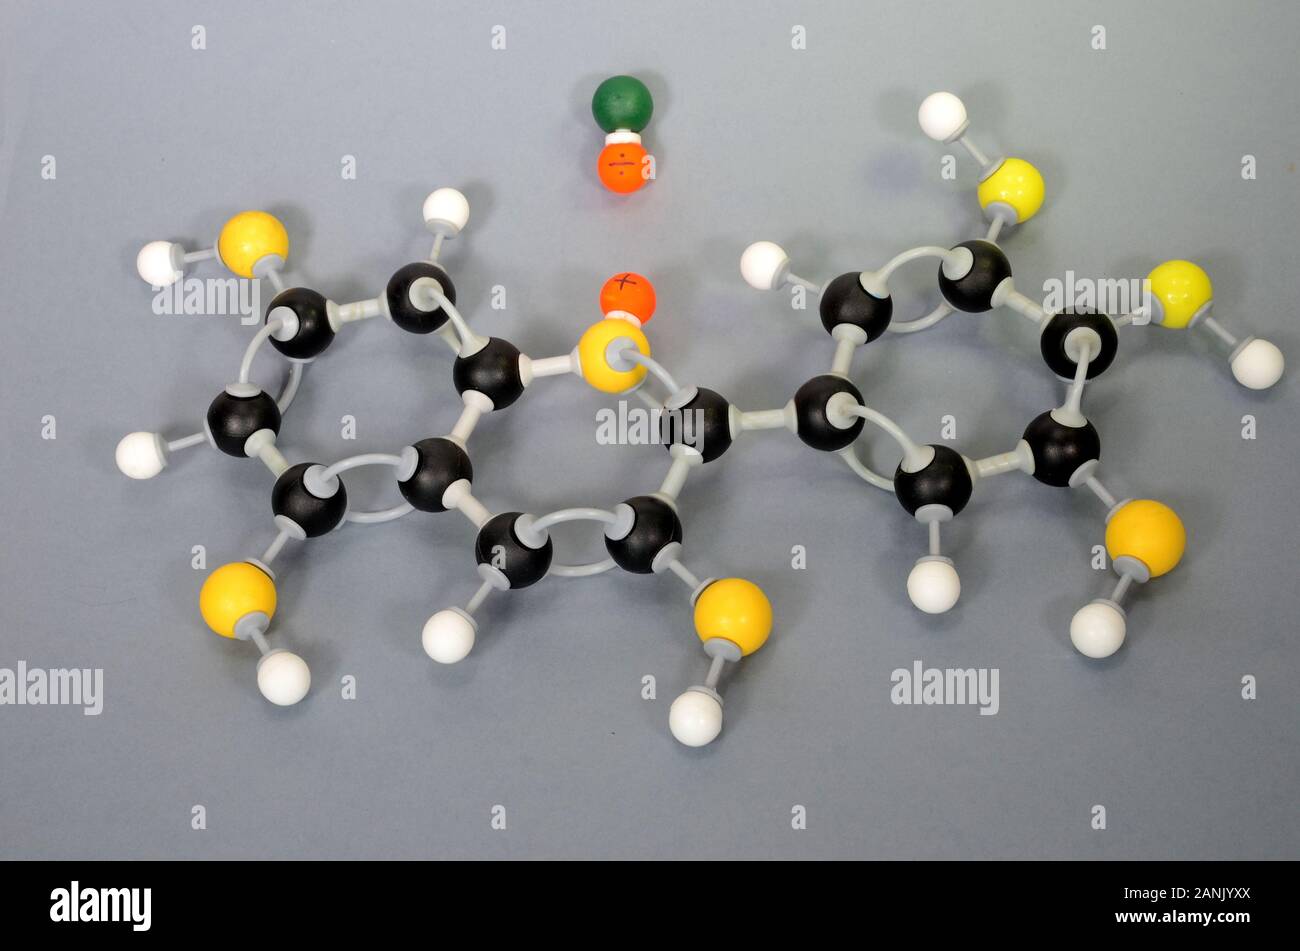 Molécule modèle de la paraffine. L'hydrogène est blanc, noir de carbone est, le jaune est l'oxygène et le vert est le chlore. Les sphères orange représentent des accusations dans une coor Banque D'Images